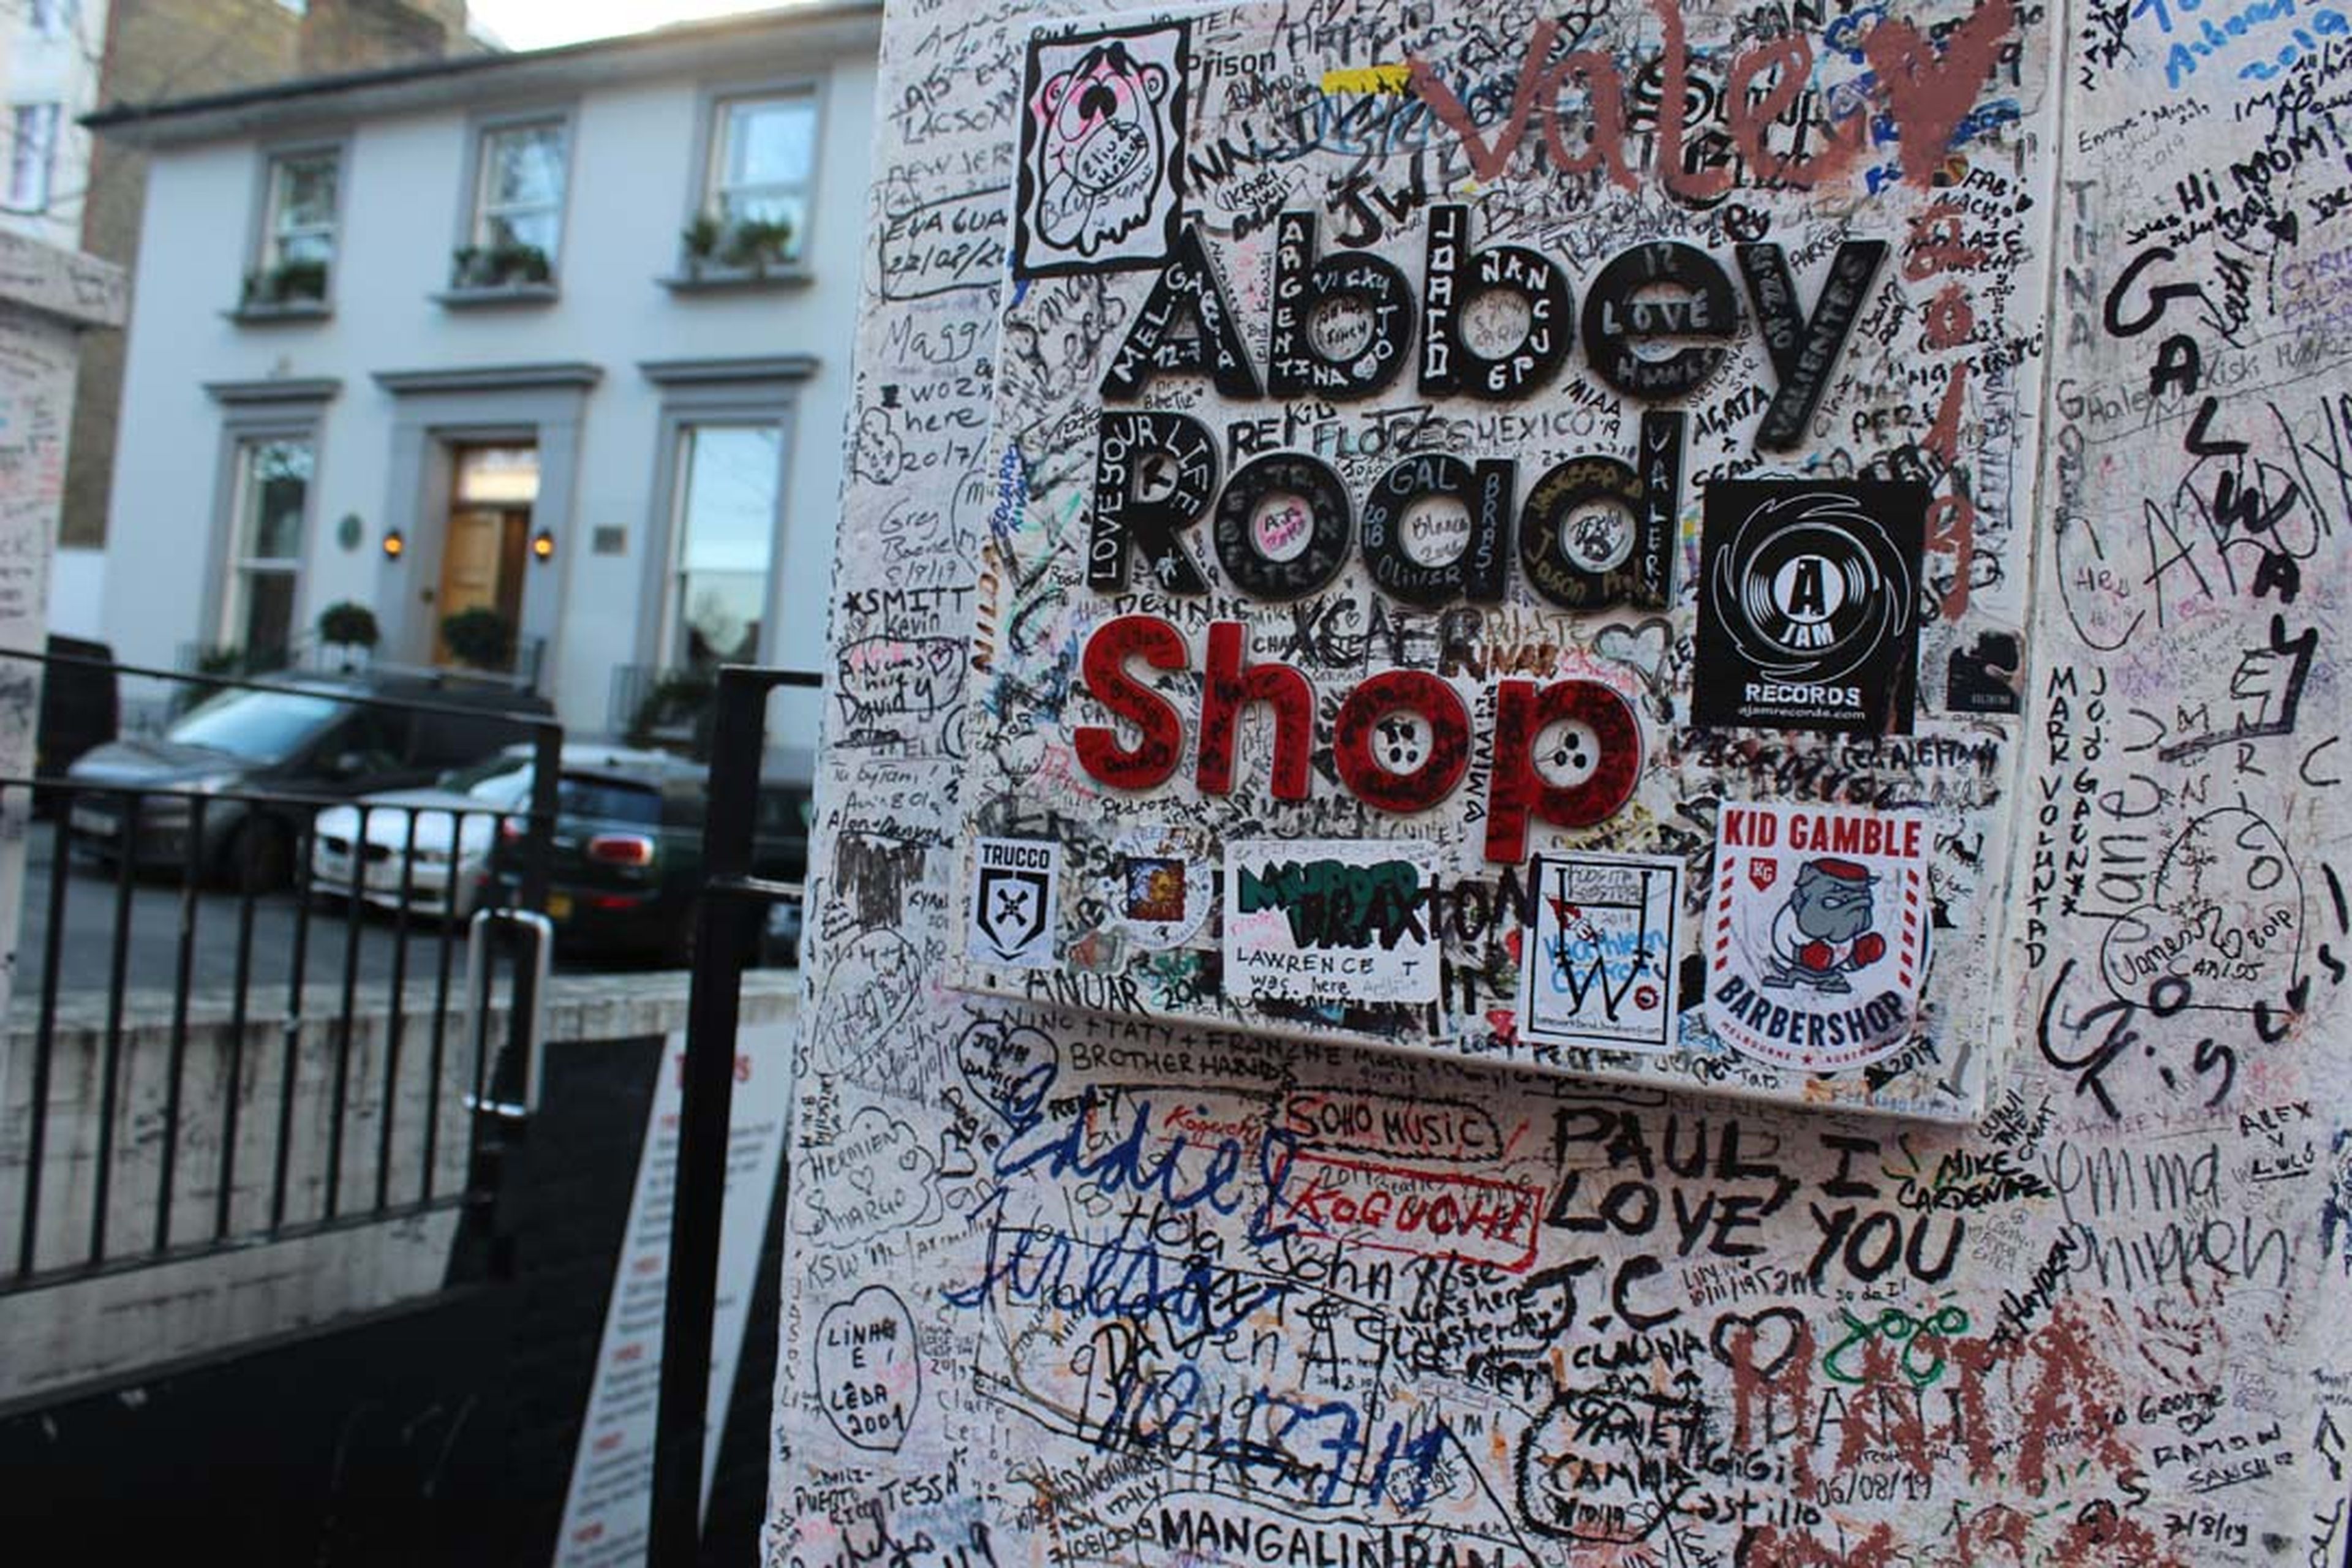 50 años de 'Abbey Road' de Los Beatles y la historia del paso de cebra más famoso del mundo